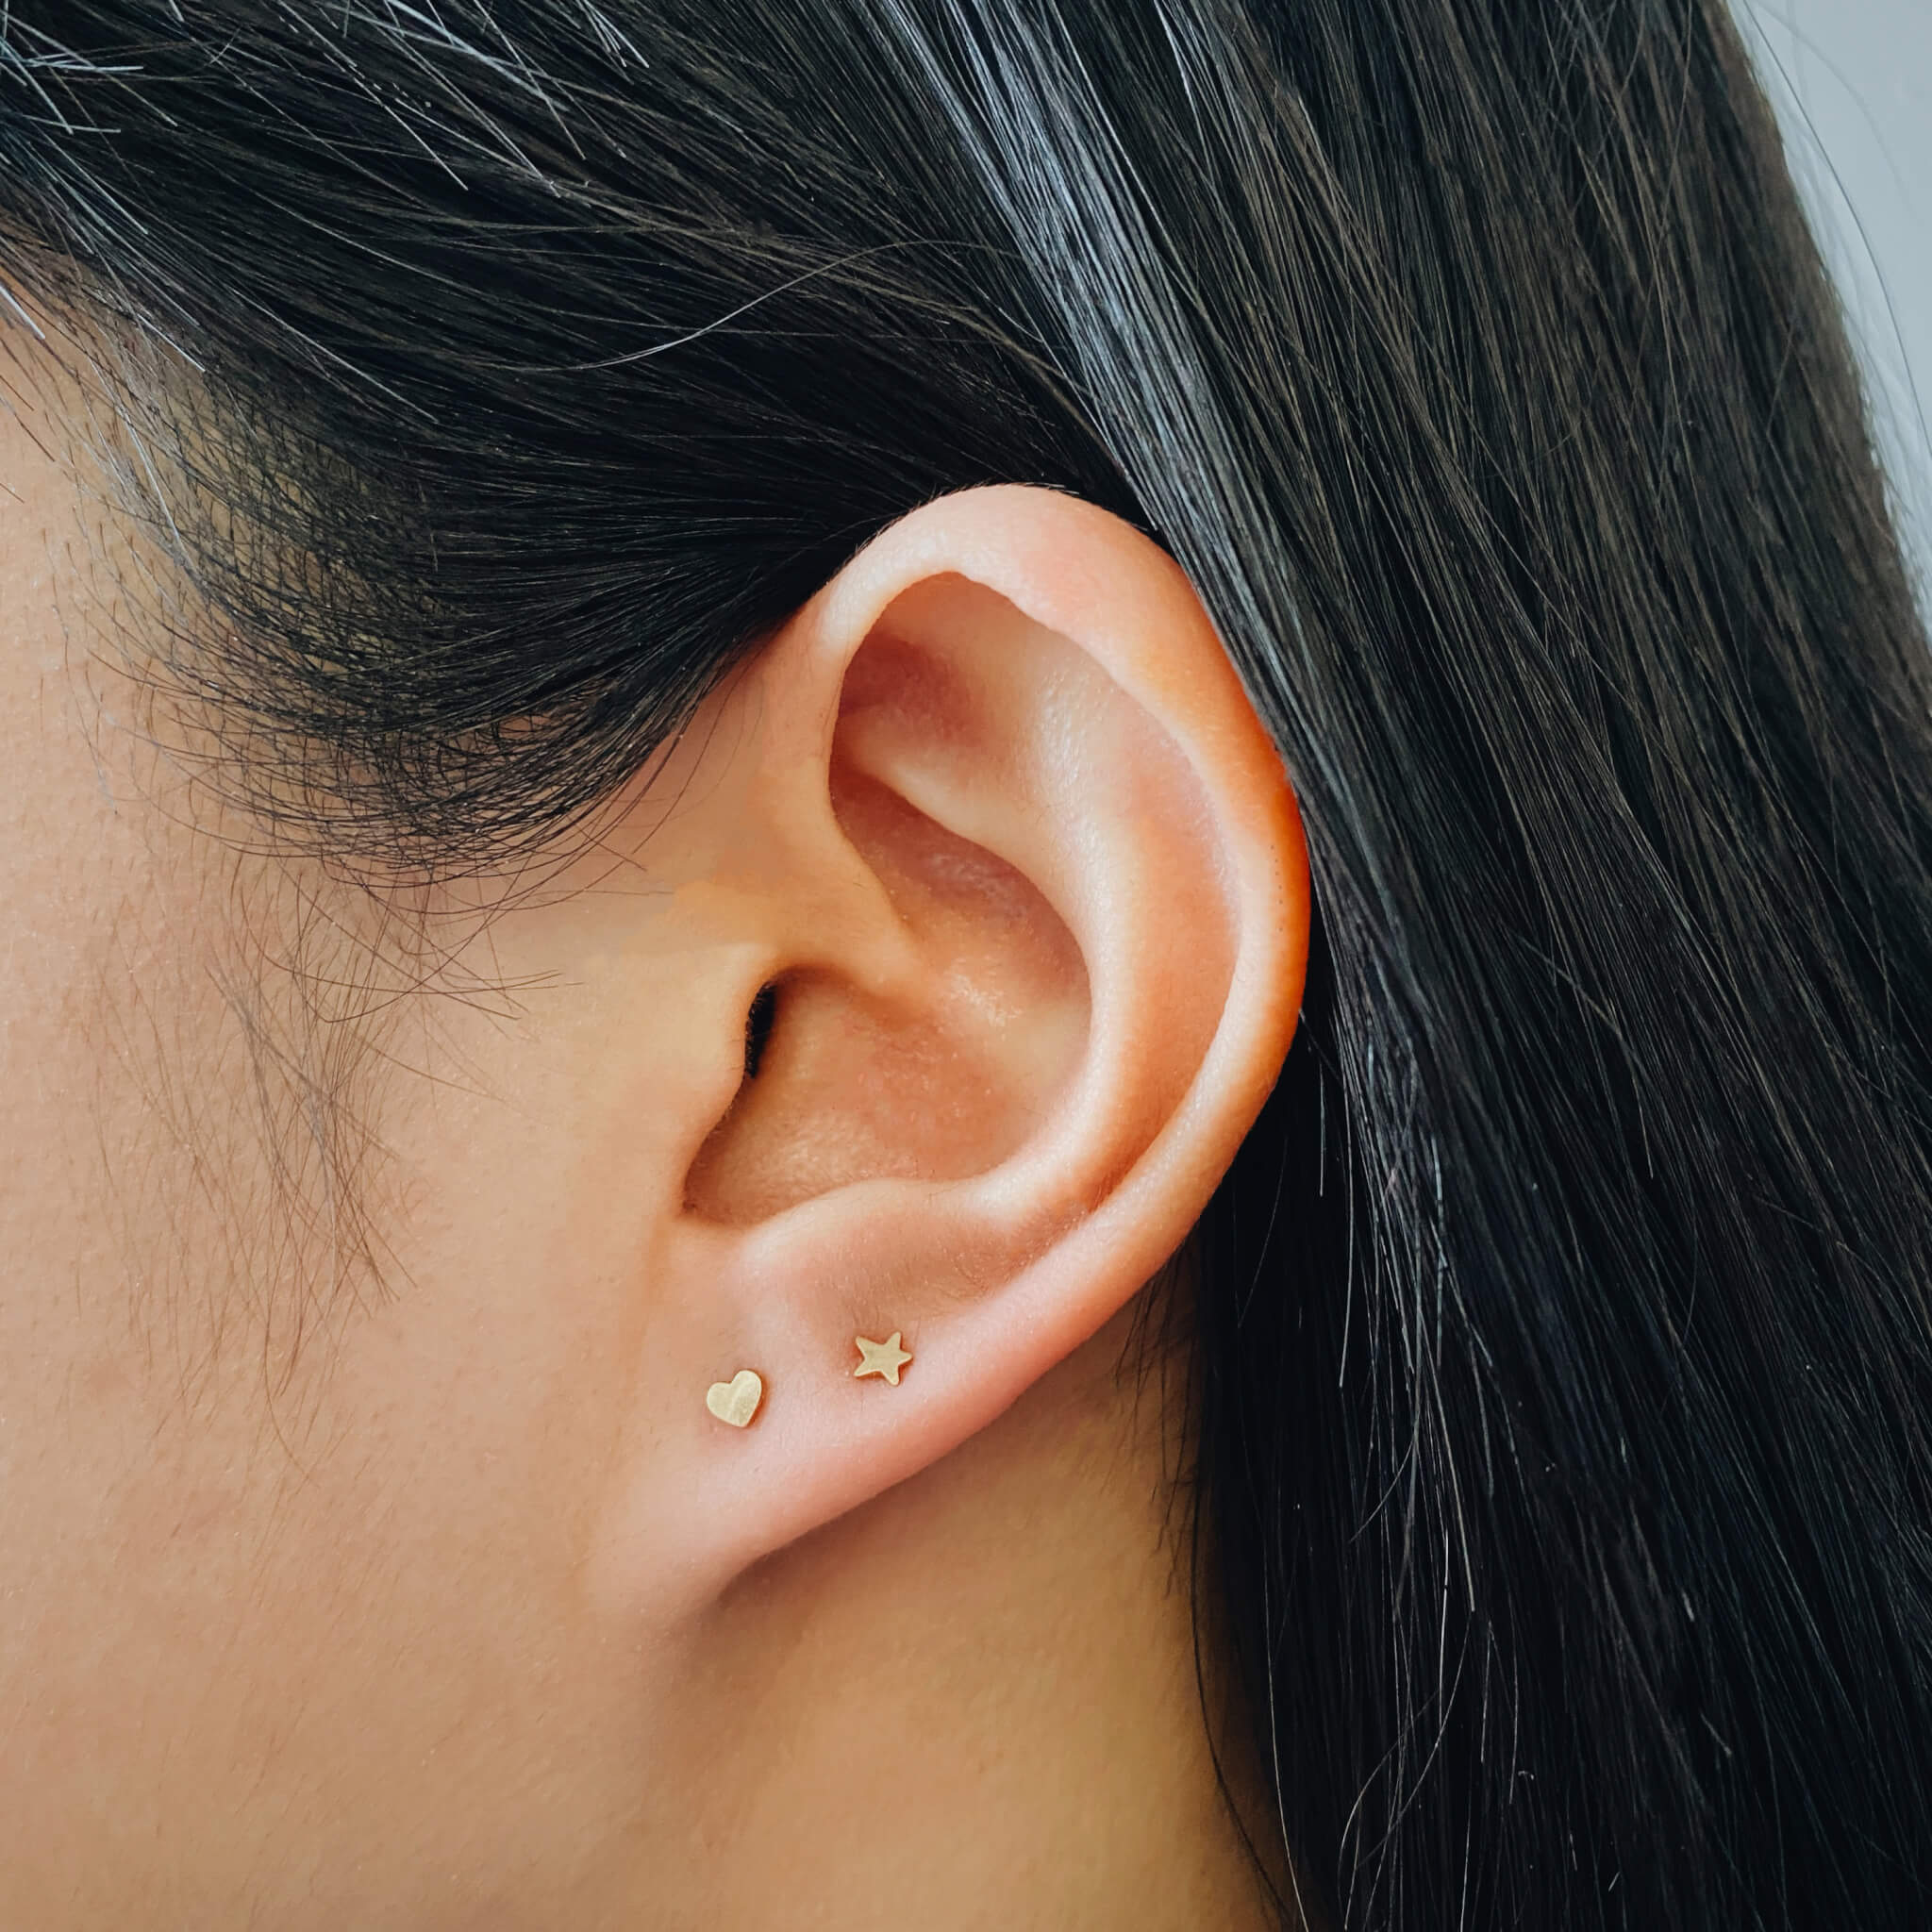 Nap Earrings: 20g Flat Back Earrings for Lobe Piercings | Maison Miru | Flat  back earrings, Earrings, Lobe piercing